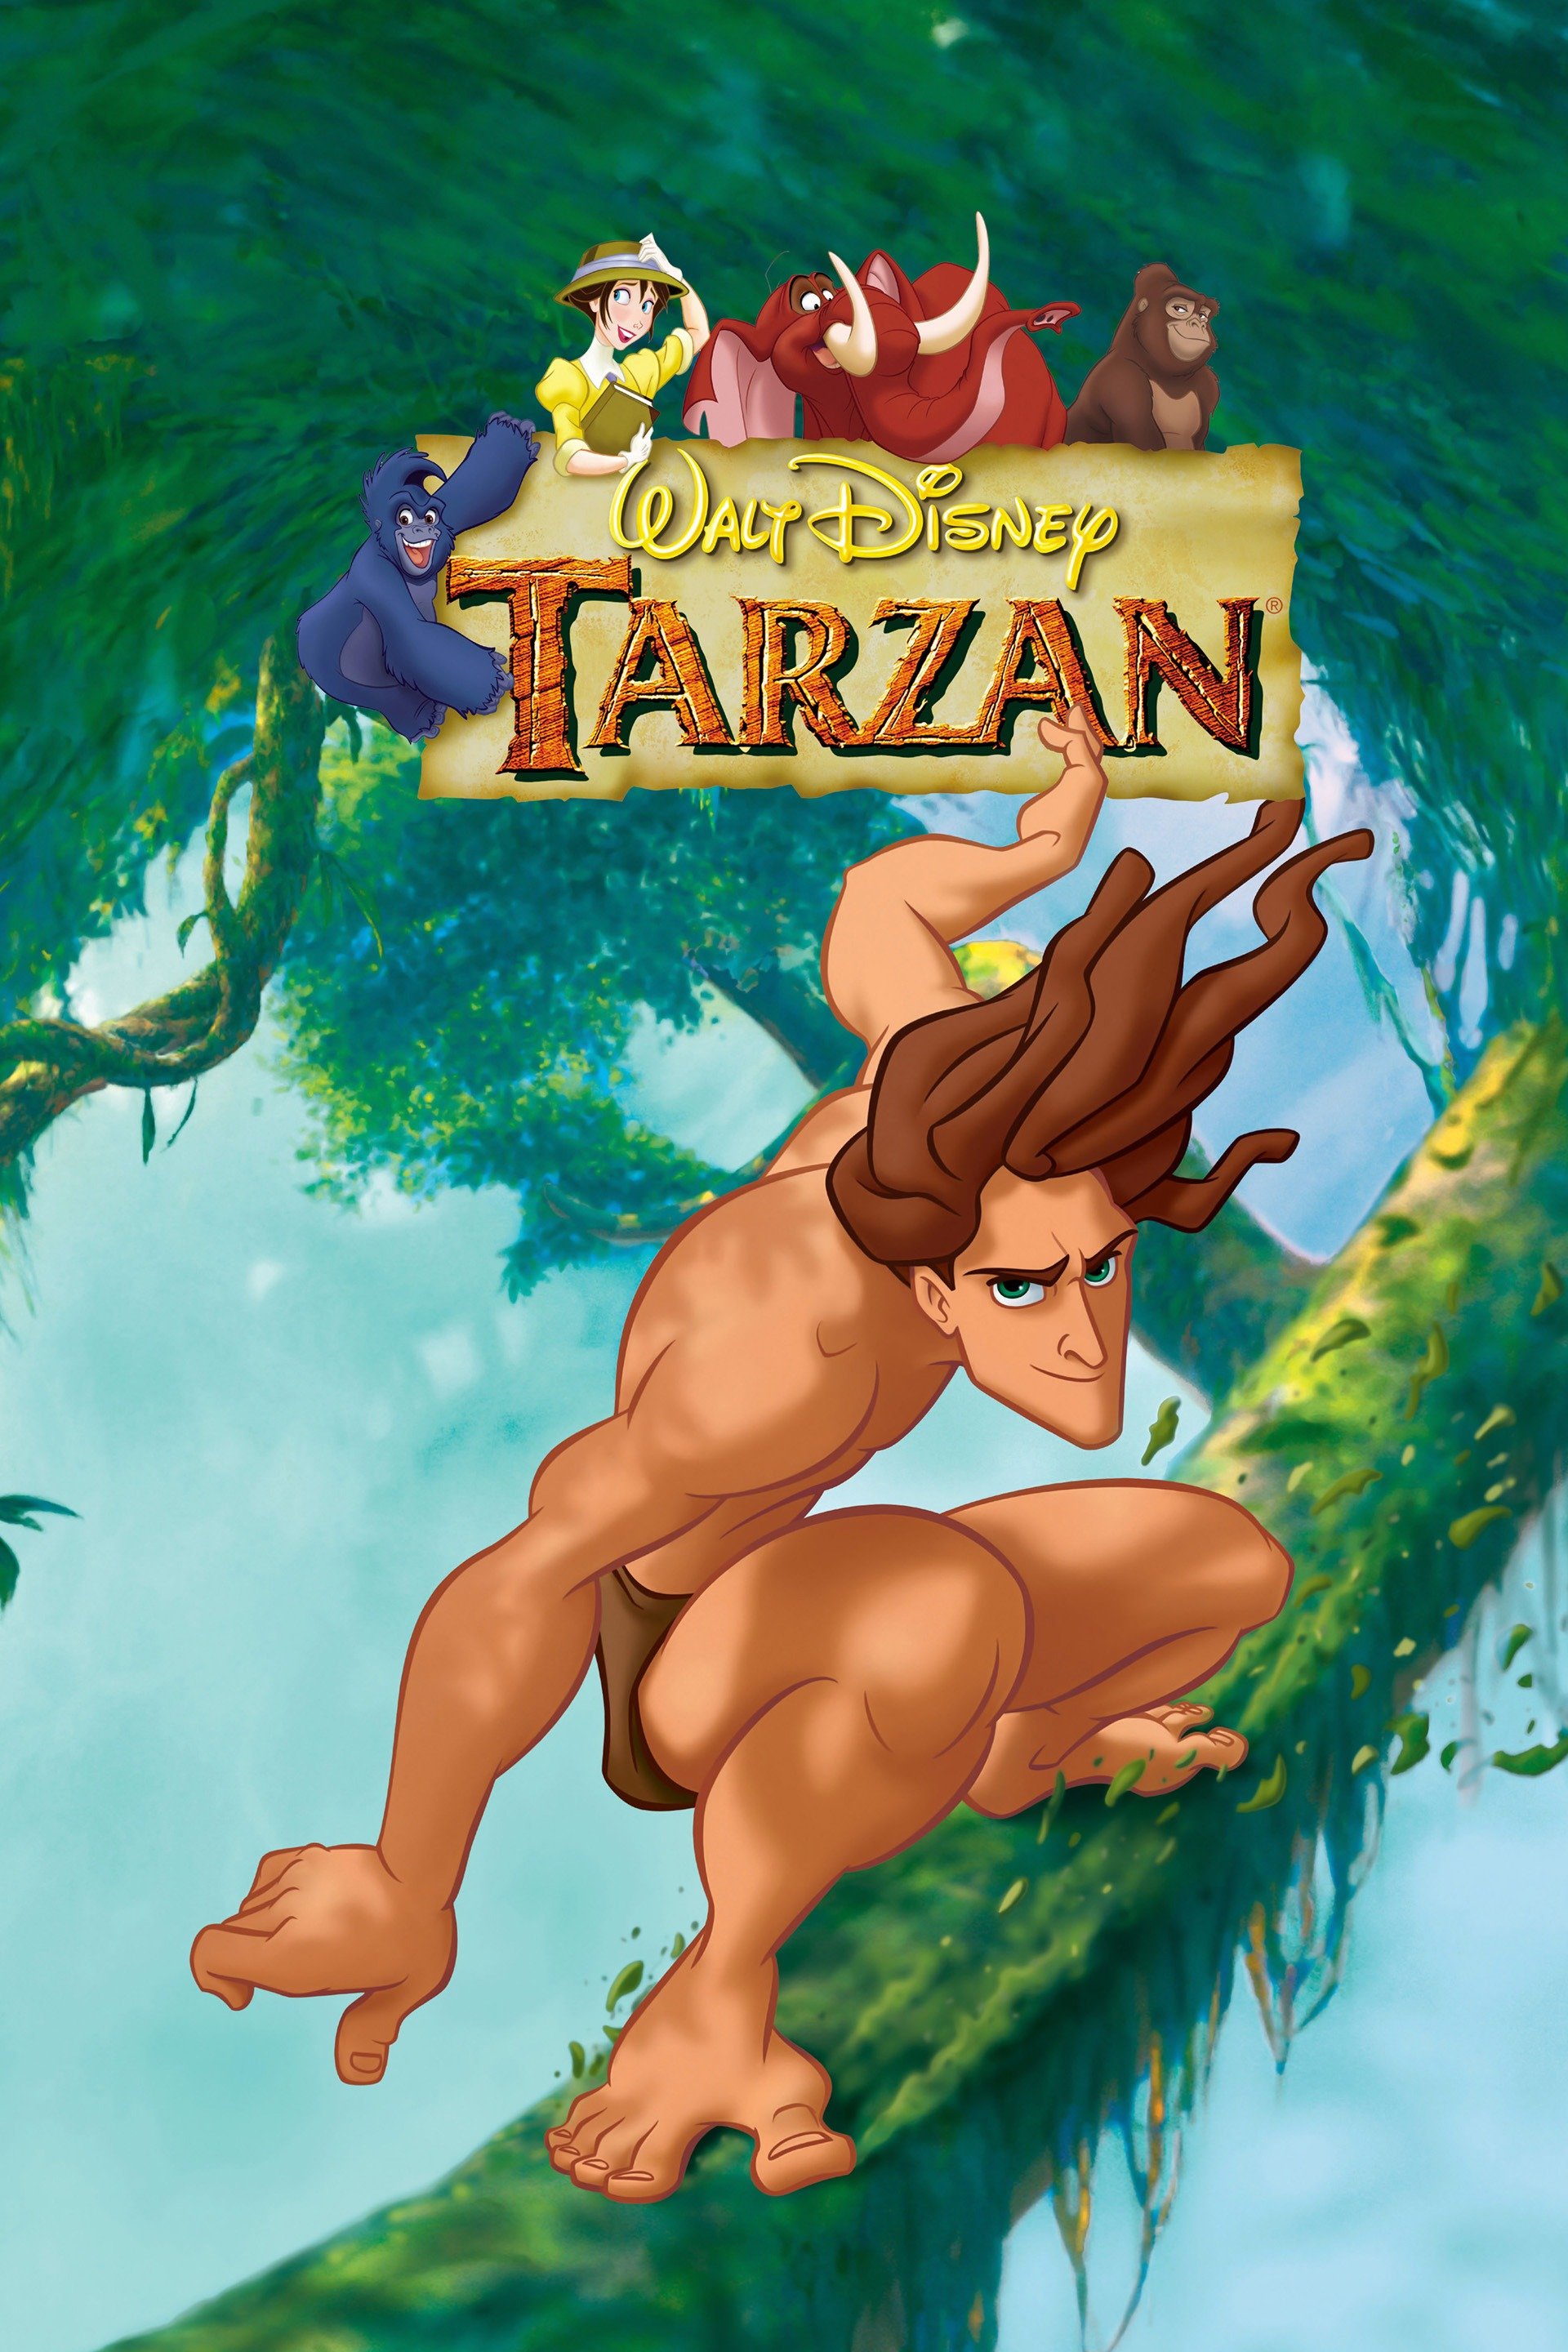 1920px x 2880px - Tarzan - Rotten Tomatoes